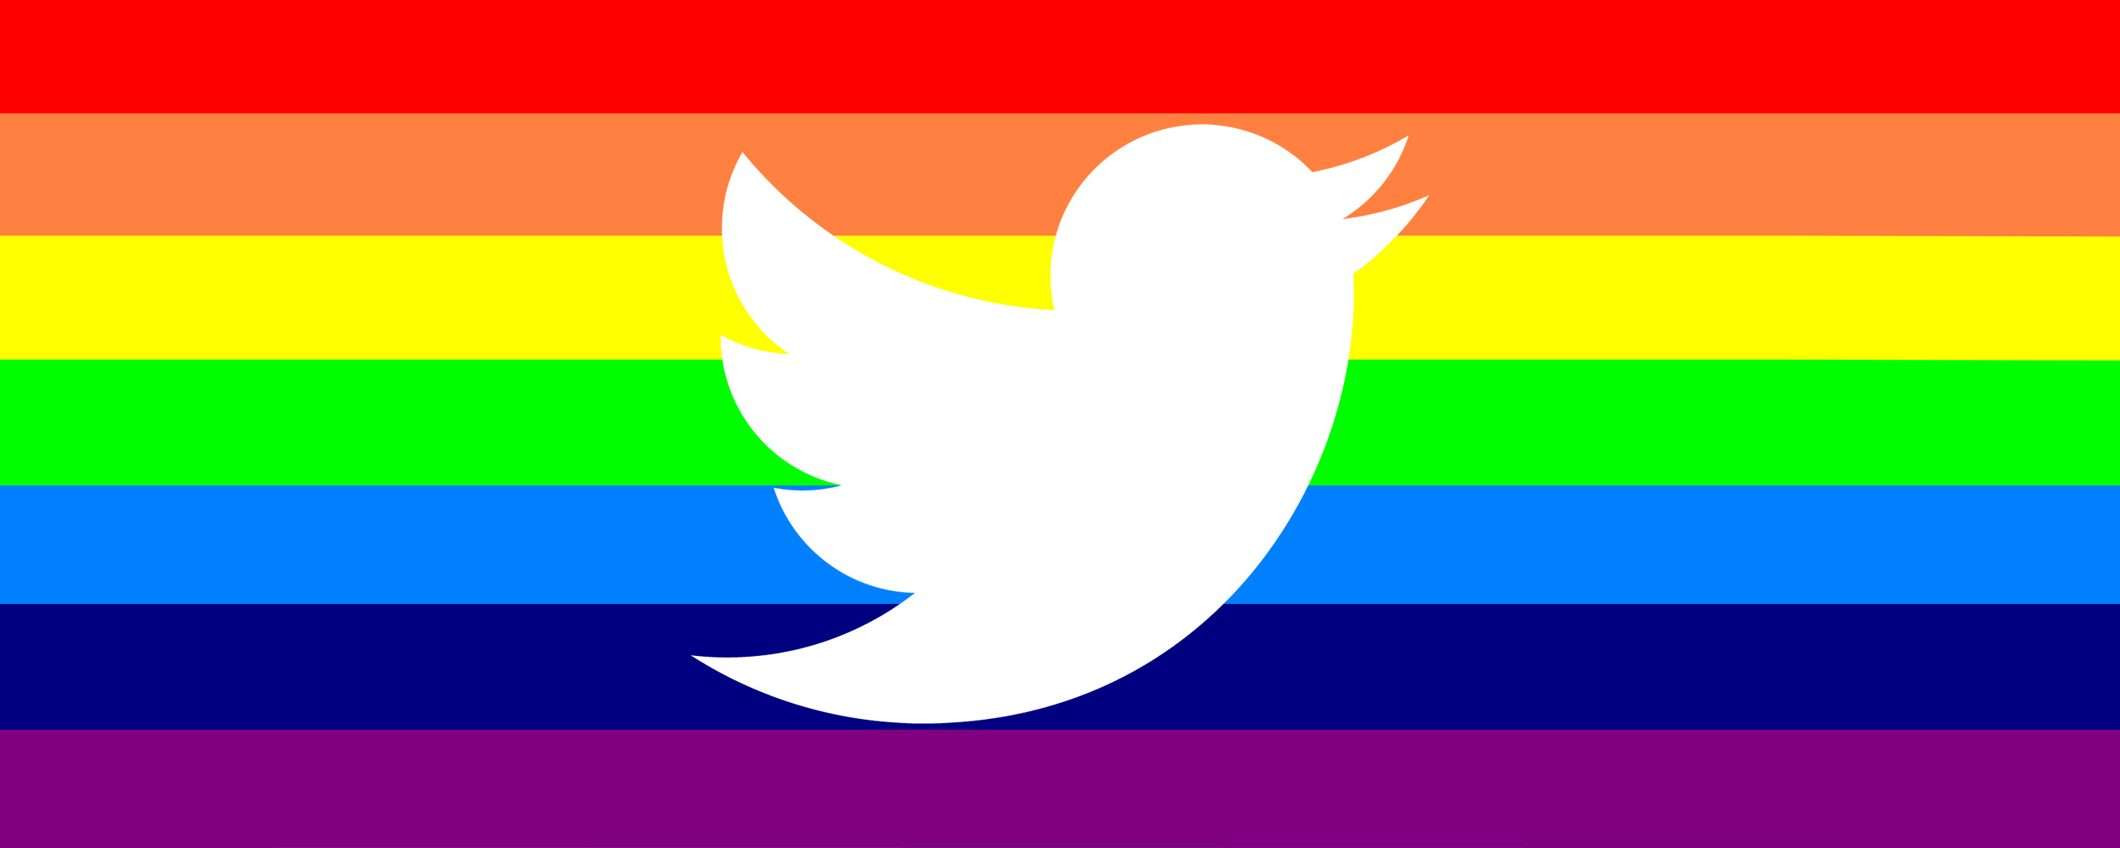 Twitter arcobaleno, ma non per il motivo che pensi